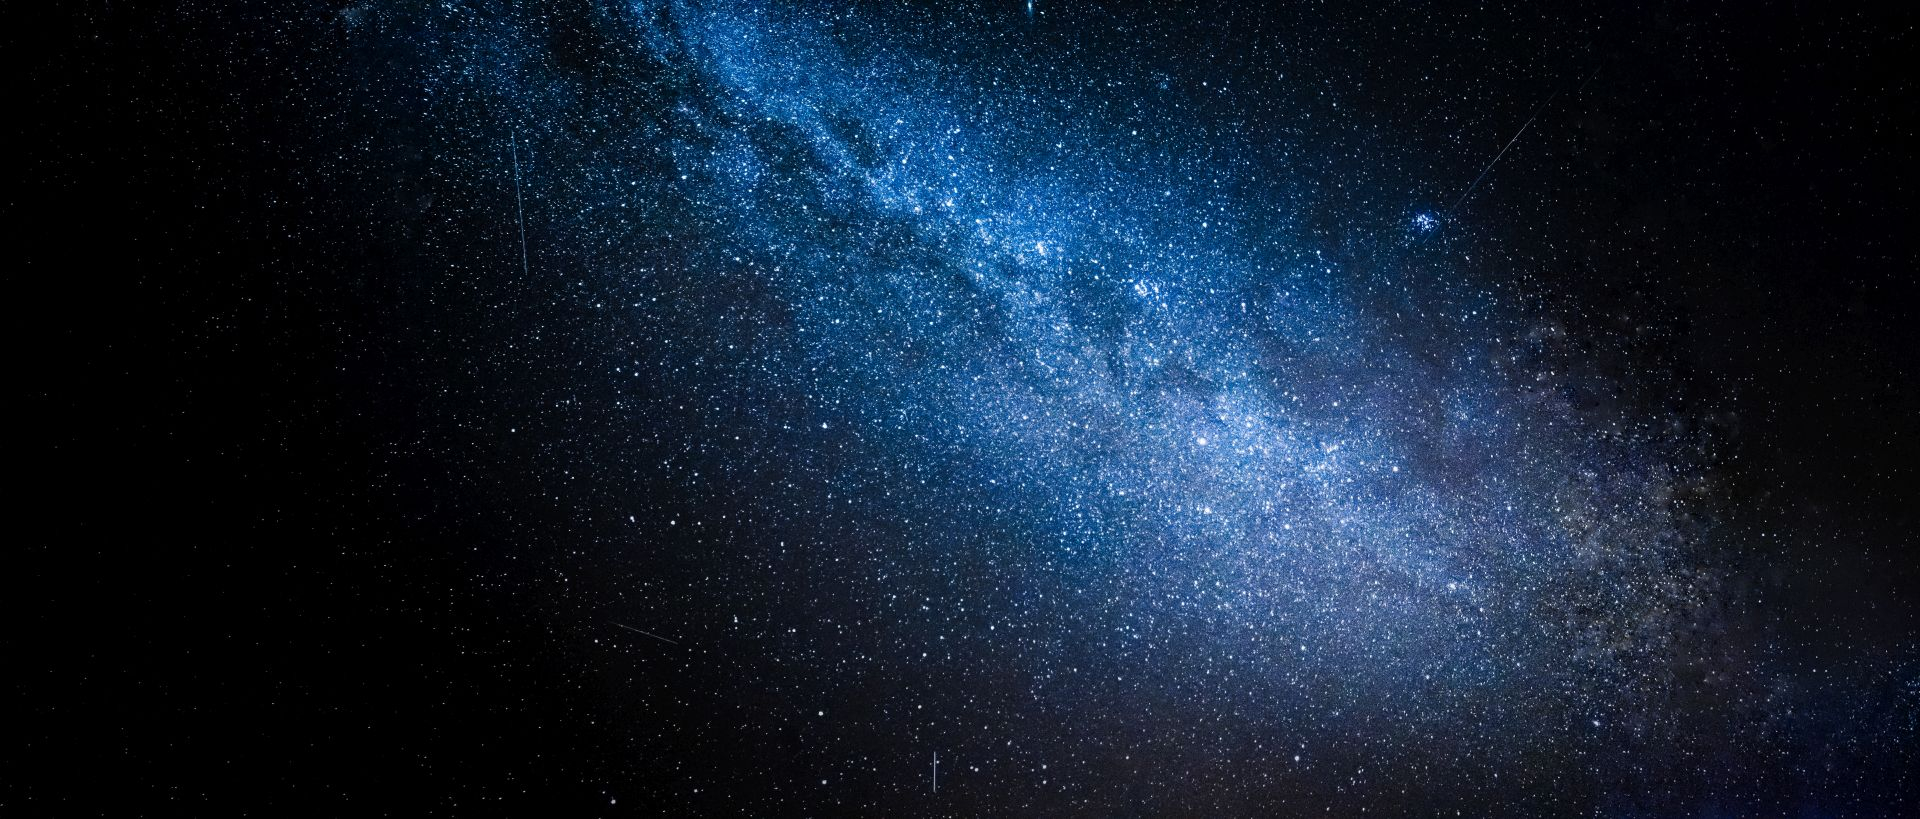 wszechświat bez ciemnej materii? nowa hipoteza wzbudza kontrowersje